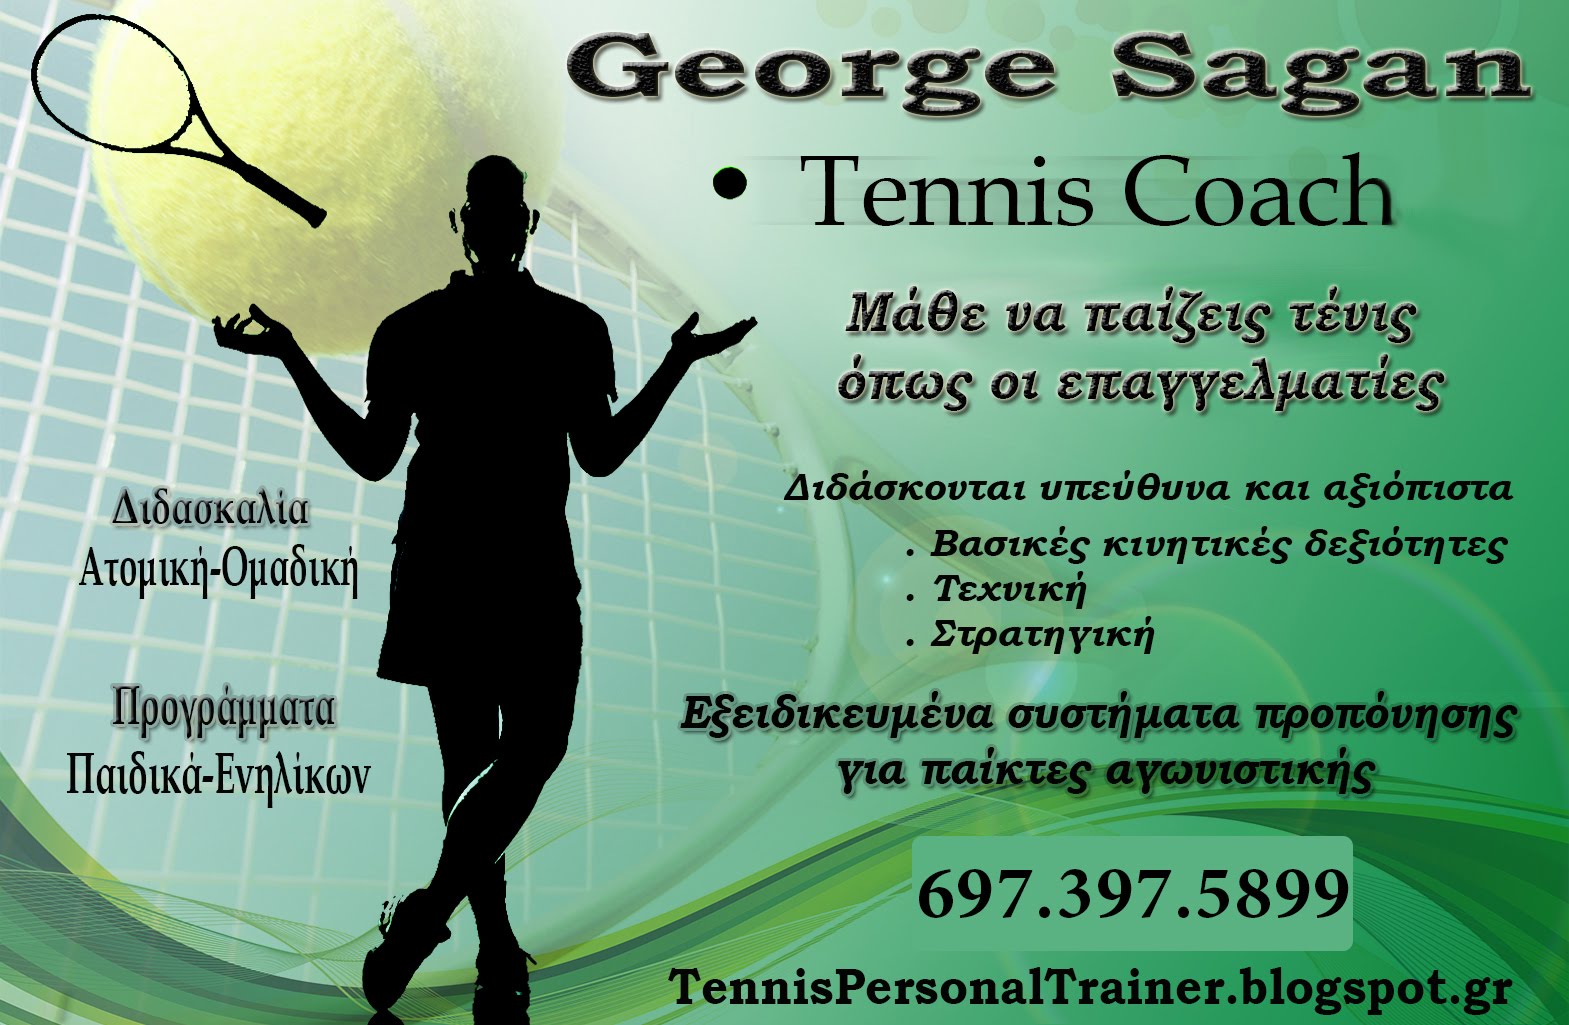 Μάθε να παίζεις τένις όπως οι επαγγελματίες